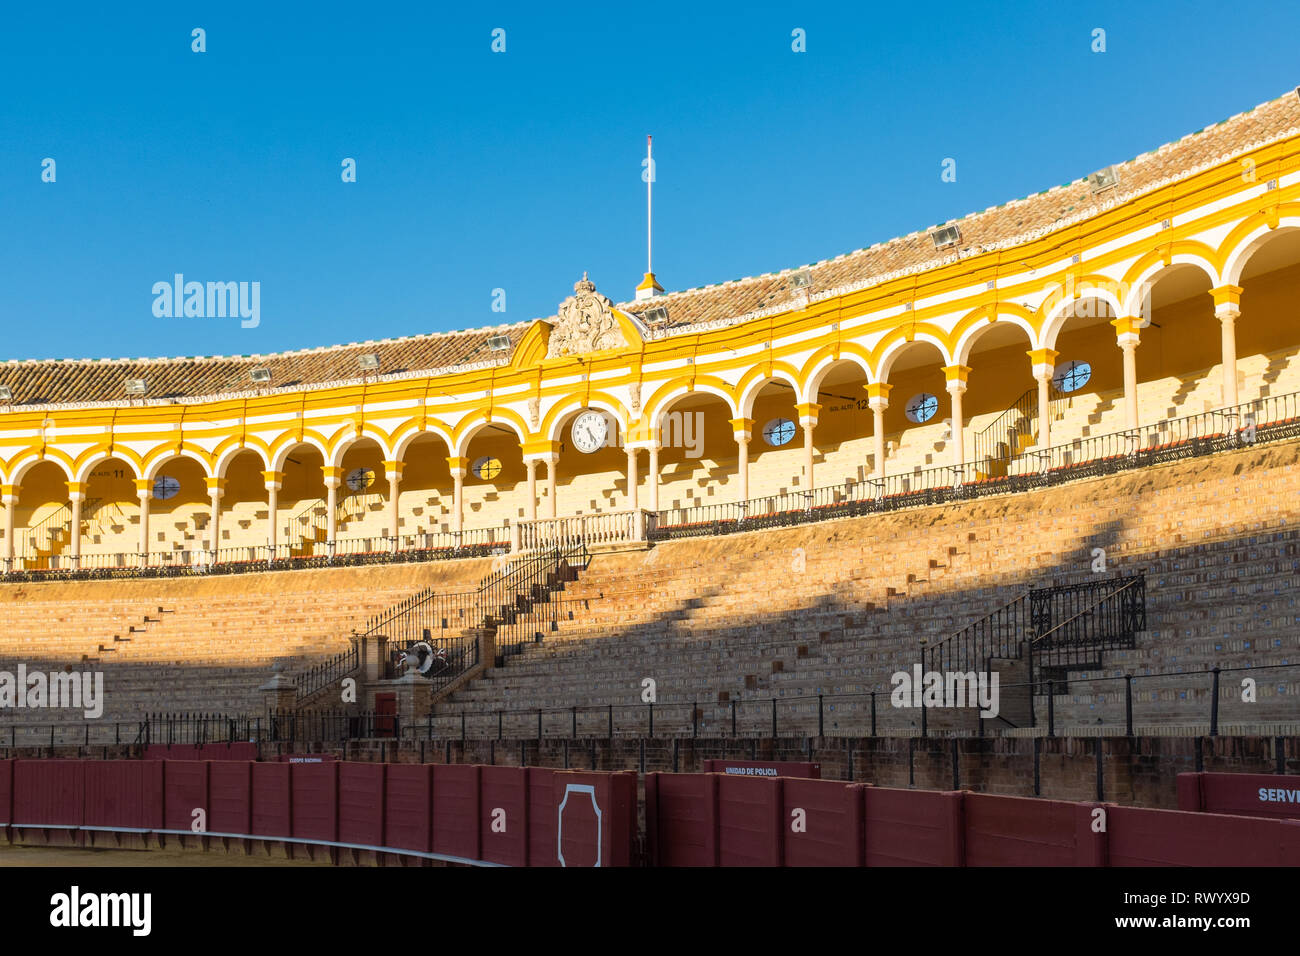 Plaza de toros de la Real Maestranza de caballería de Sevilla o Siviglia Bullring arena Foto Stock